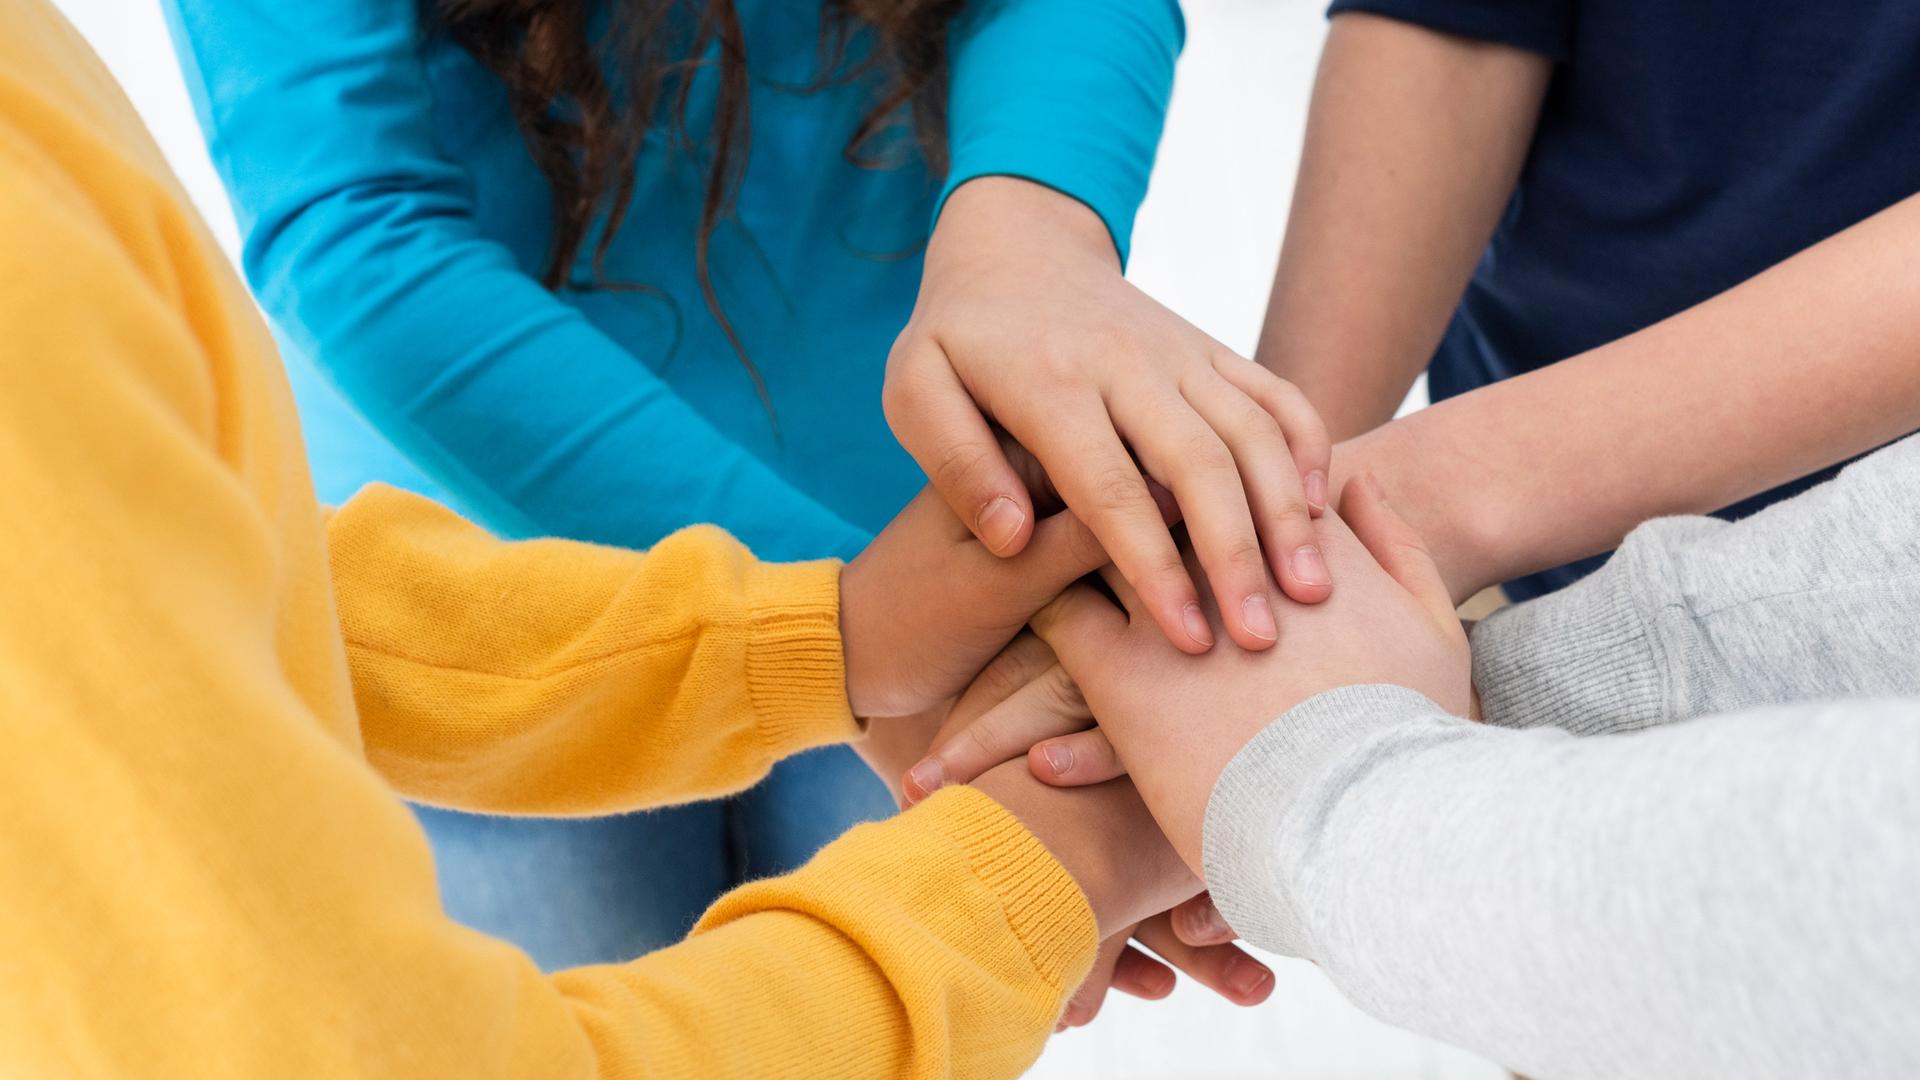 Vier junge Menschen in verschiedenfarbiger Kleidung legen ihre Hände im Kreis übereinander.